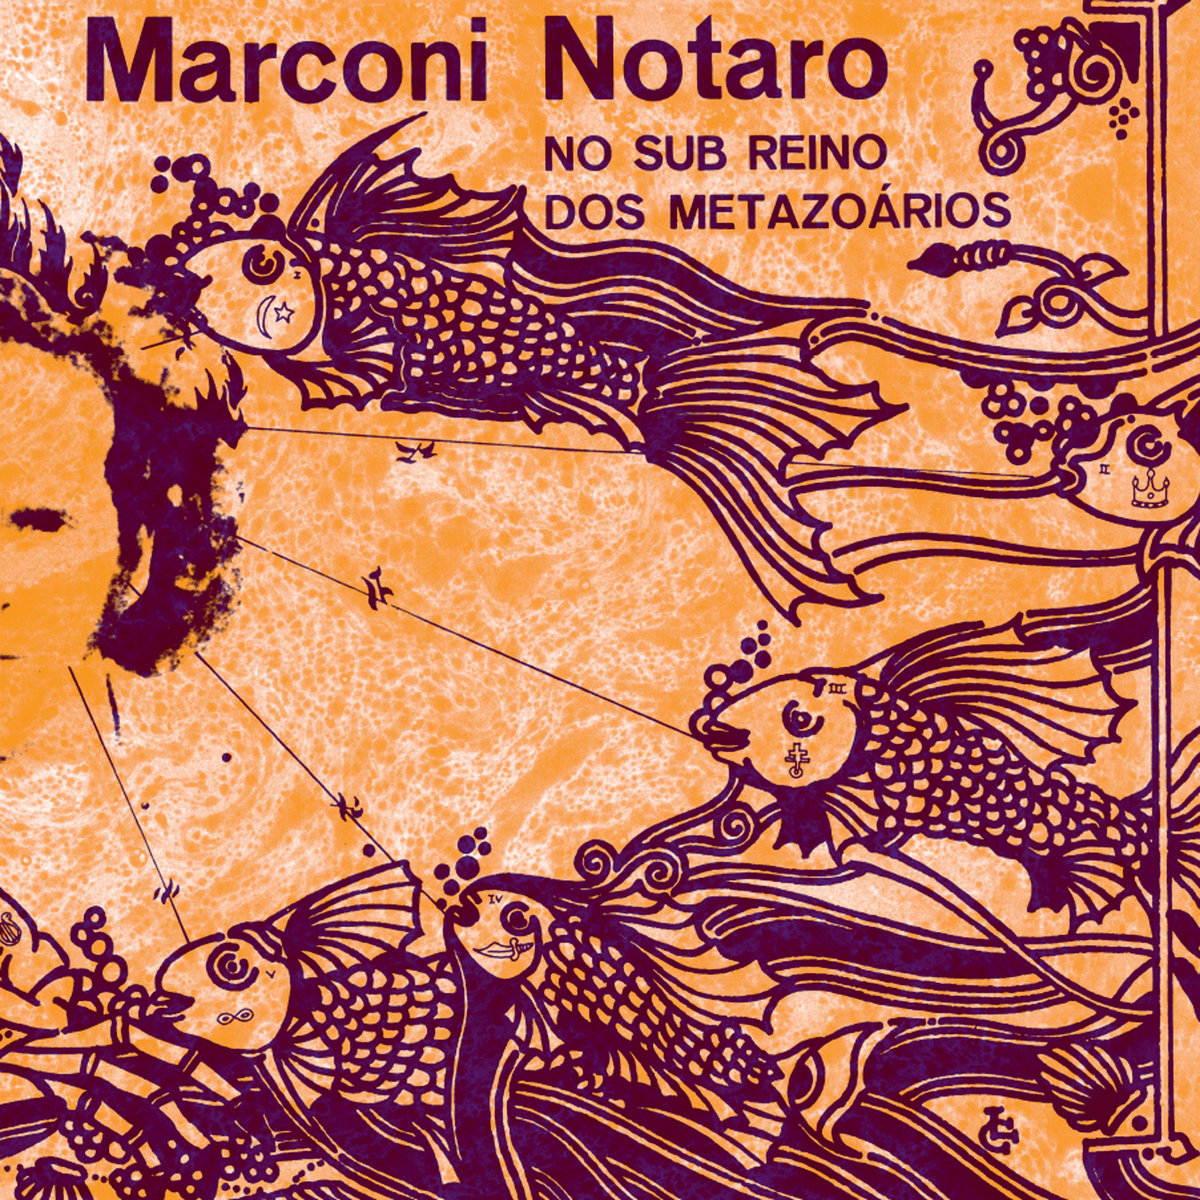 Marconi Notaro - No Sub Reino Dos Metazoarios : CD